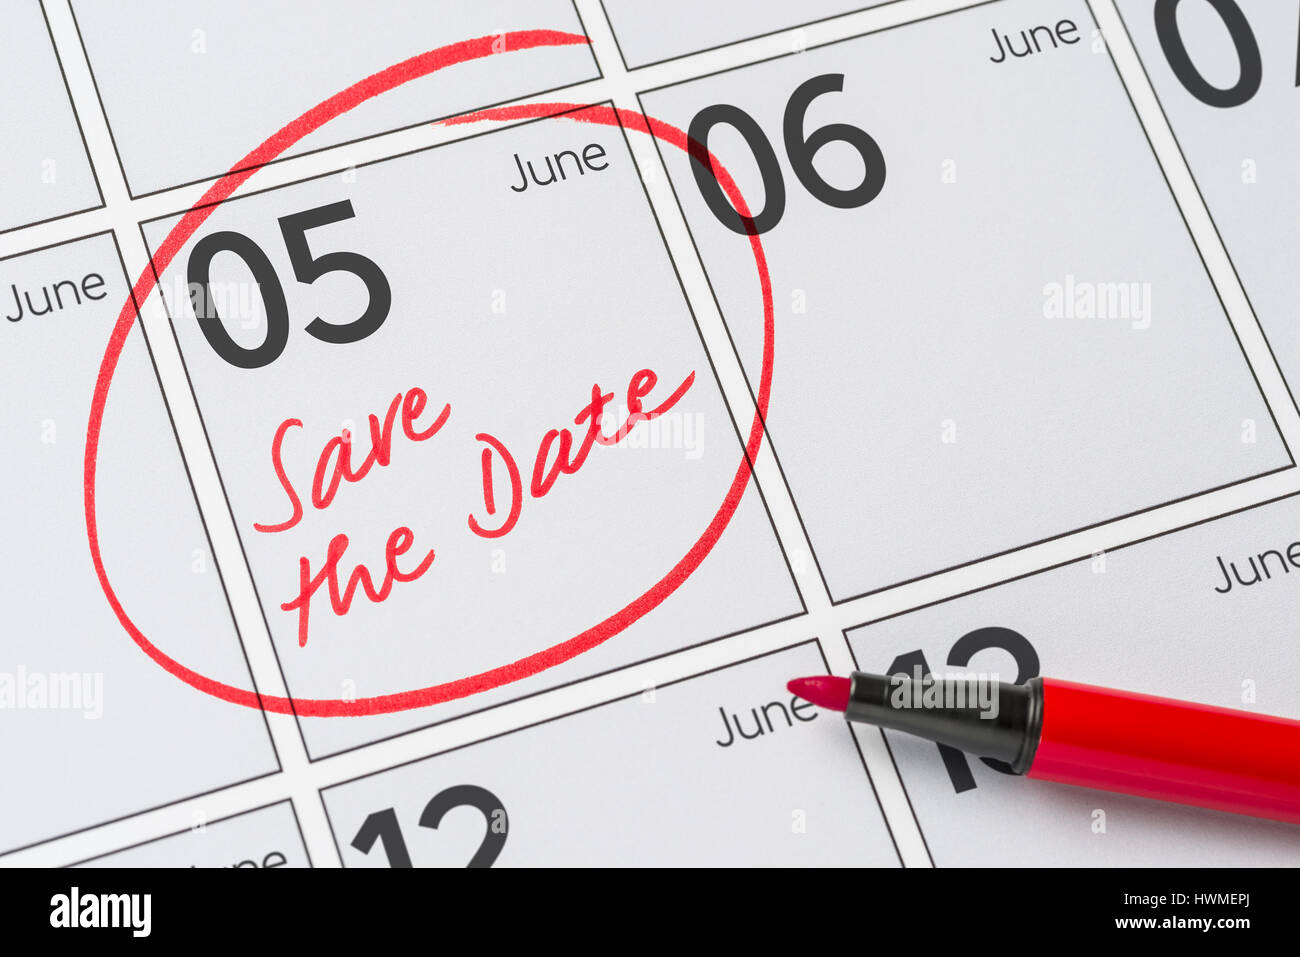 Enregistrer la date inscrite sur un calendrier - juin 05 Banque D'Images